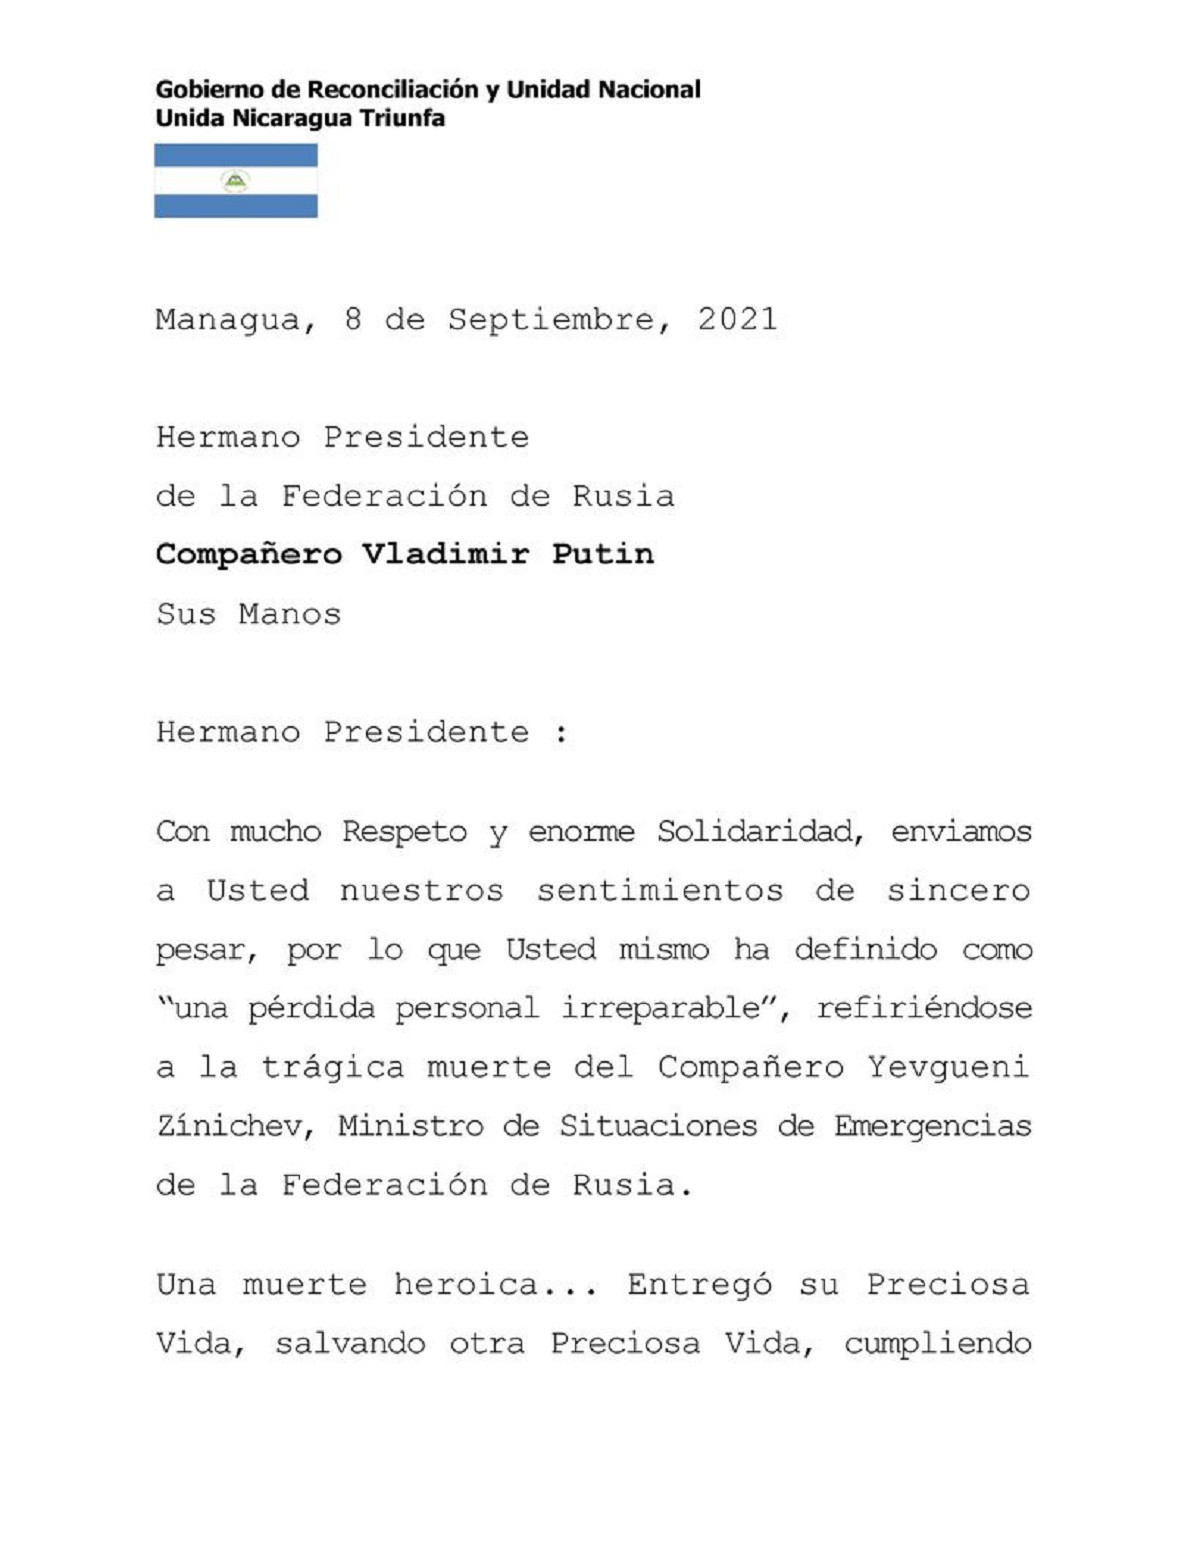 Nicaragua lamenta fallecimiento de ministro de situaciones de emergencias de rusia 1